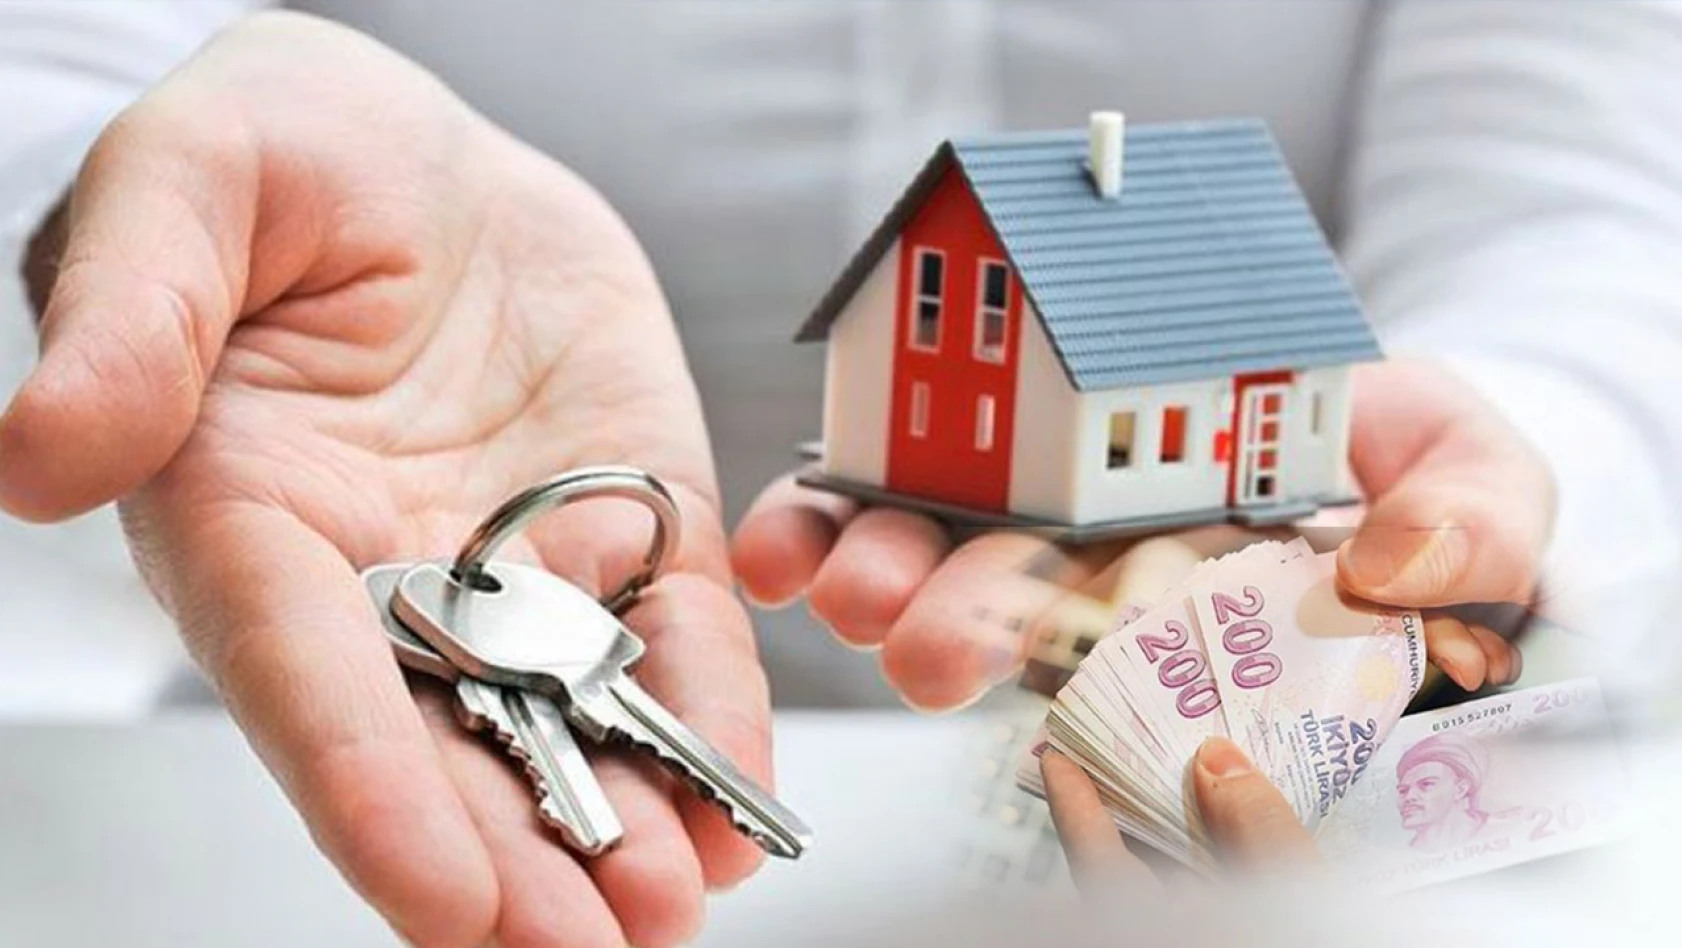 Konut fiyatlarındaki artışa karşılık: İlk ev alacaklara müjde!